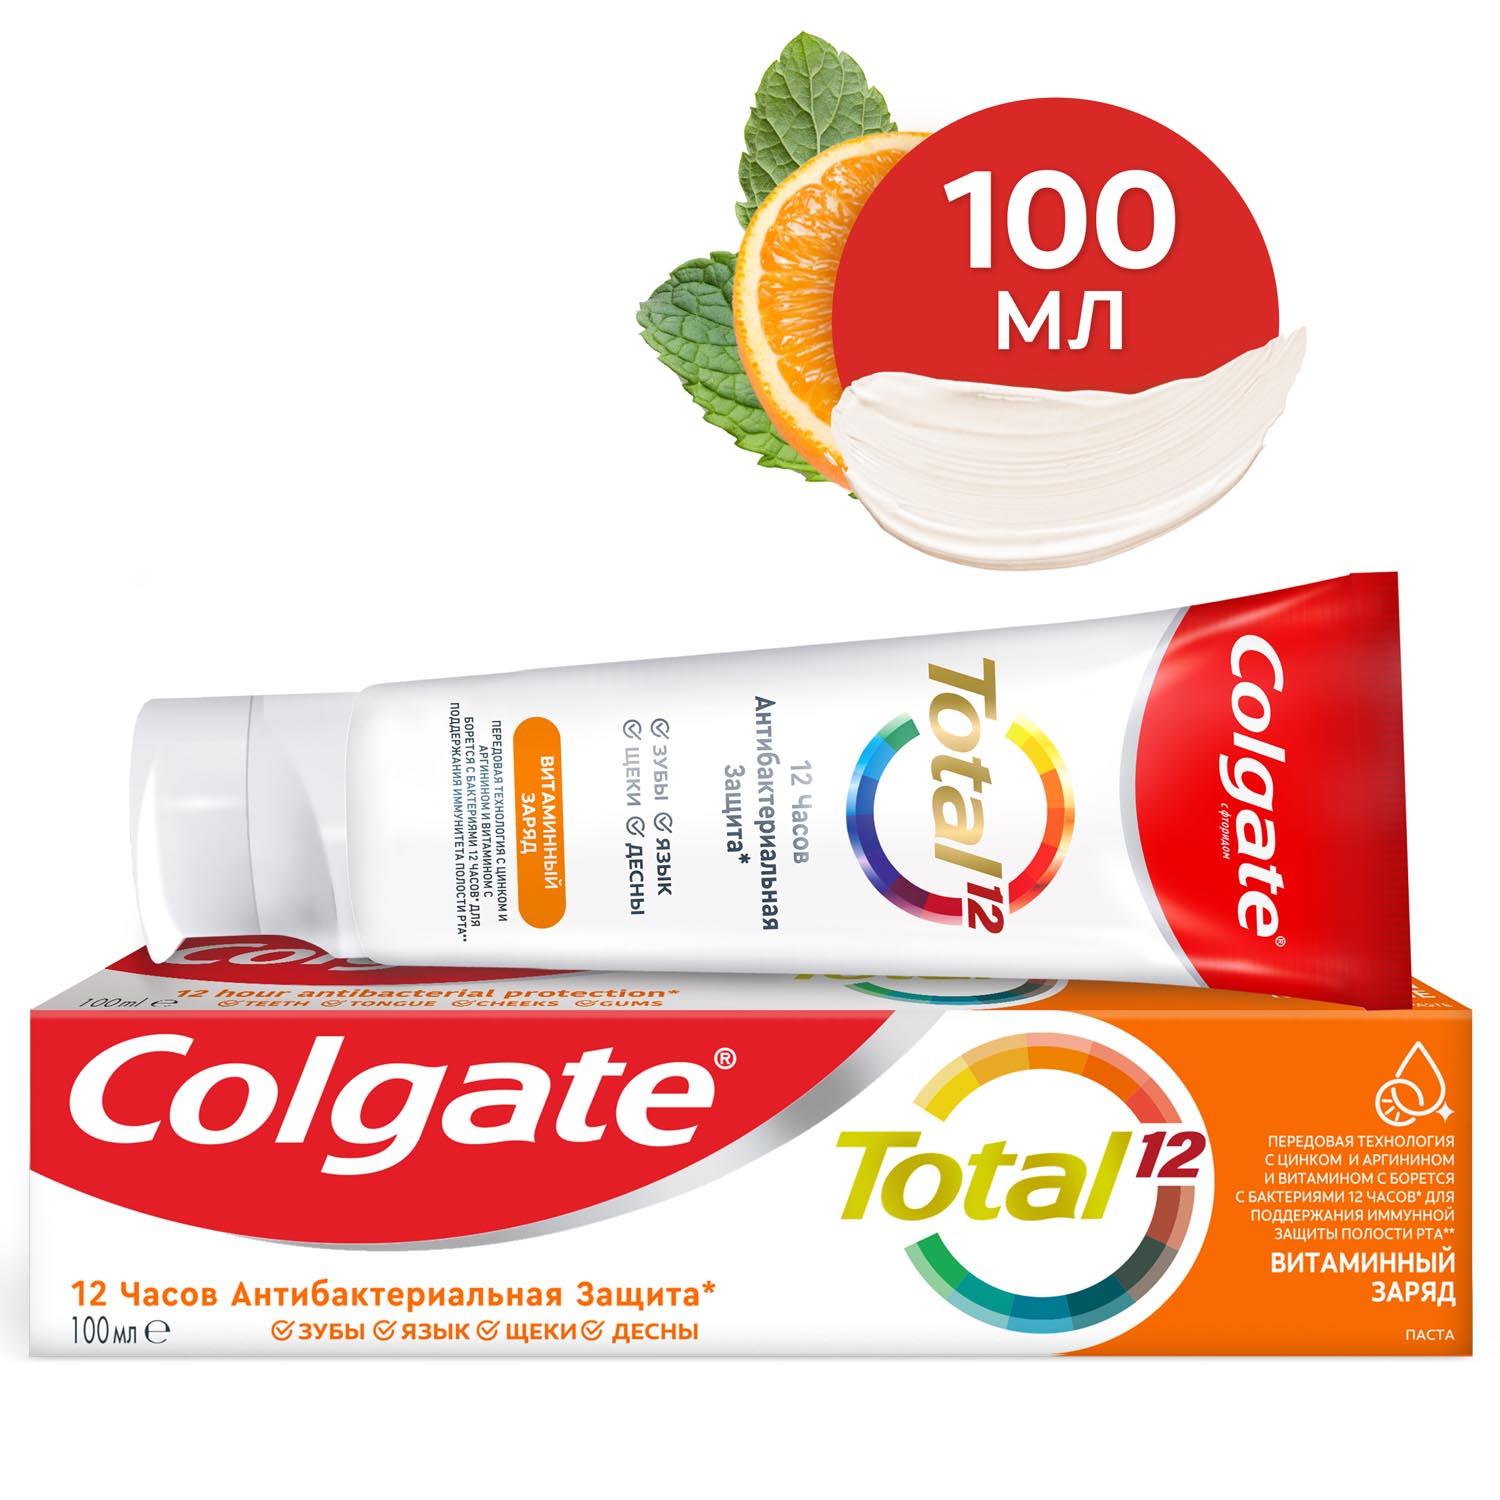 Зубная паста Colgate Total 12 Витаминный заряд с цинком и аргинином для комплексной антибактериальной защиты всей полости рта в течение 12 часов, 100 мл зубная паста против желтого налета на зубах 100 г